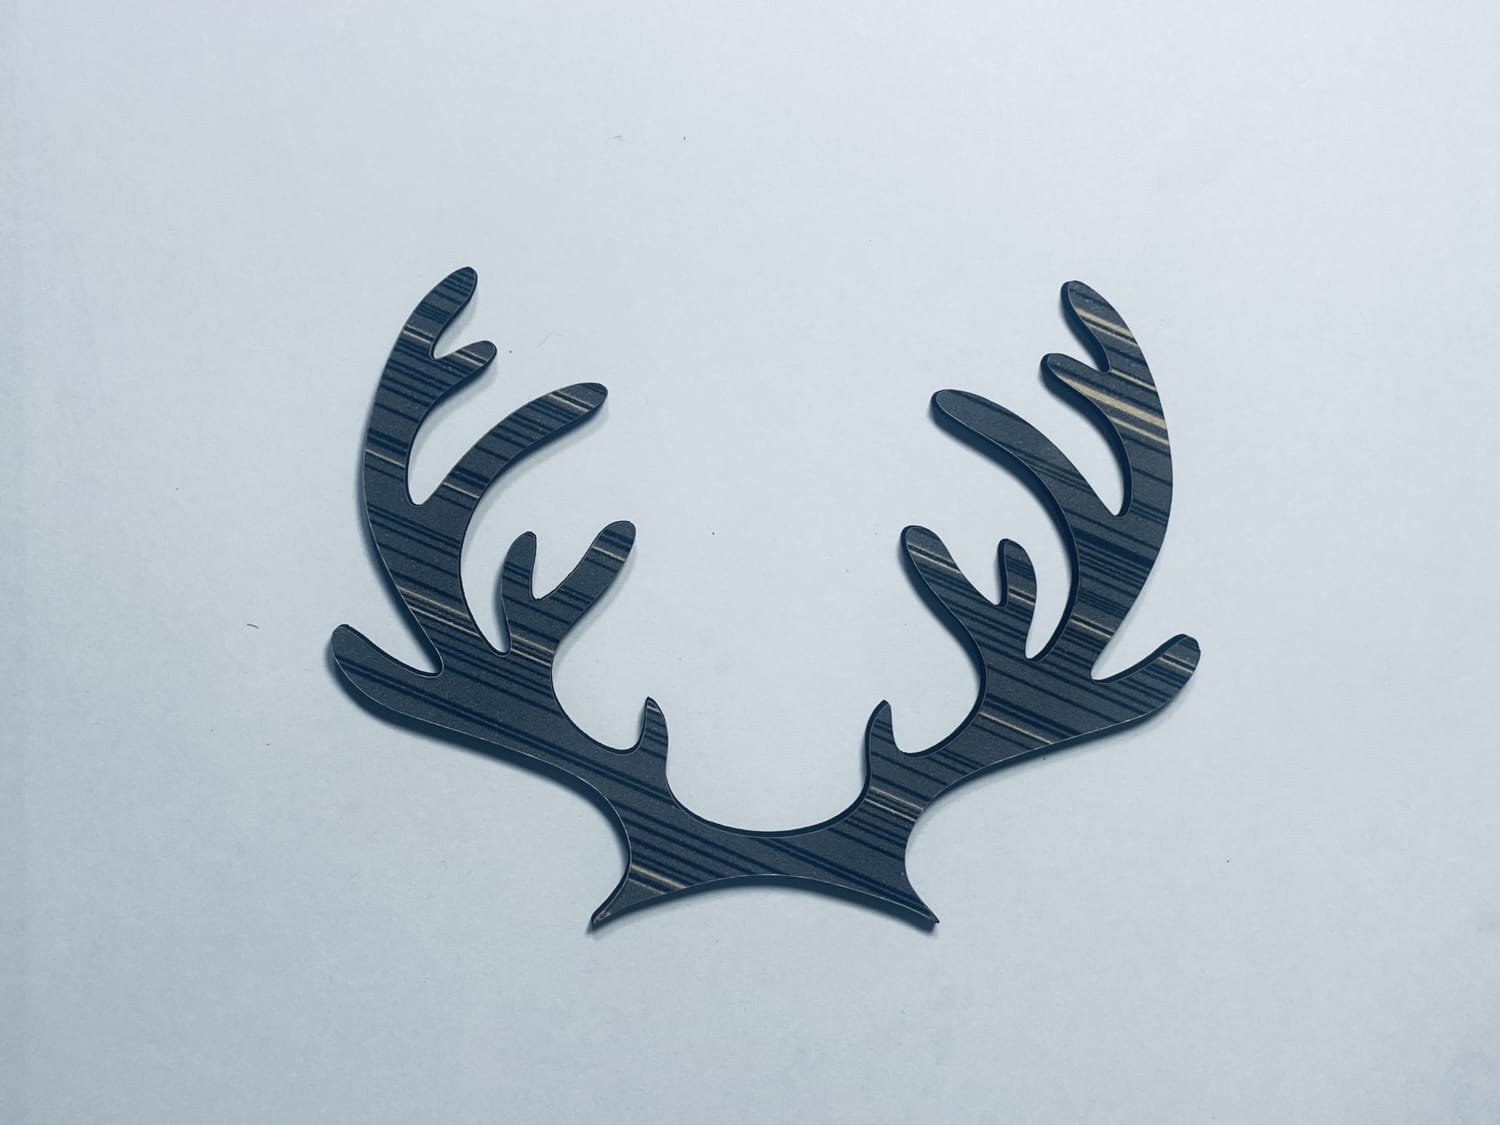 Laser Cut Wooden Reindeer Antlers Cutout Wood Reindeer Antlers Shape Free Vector